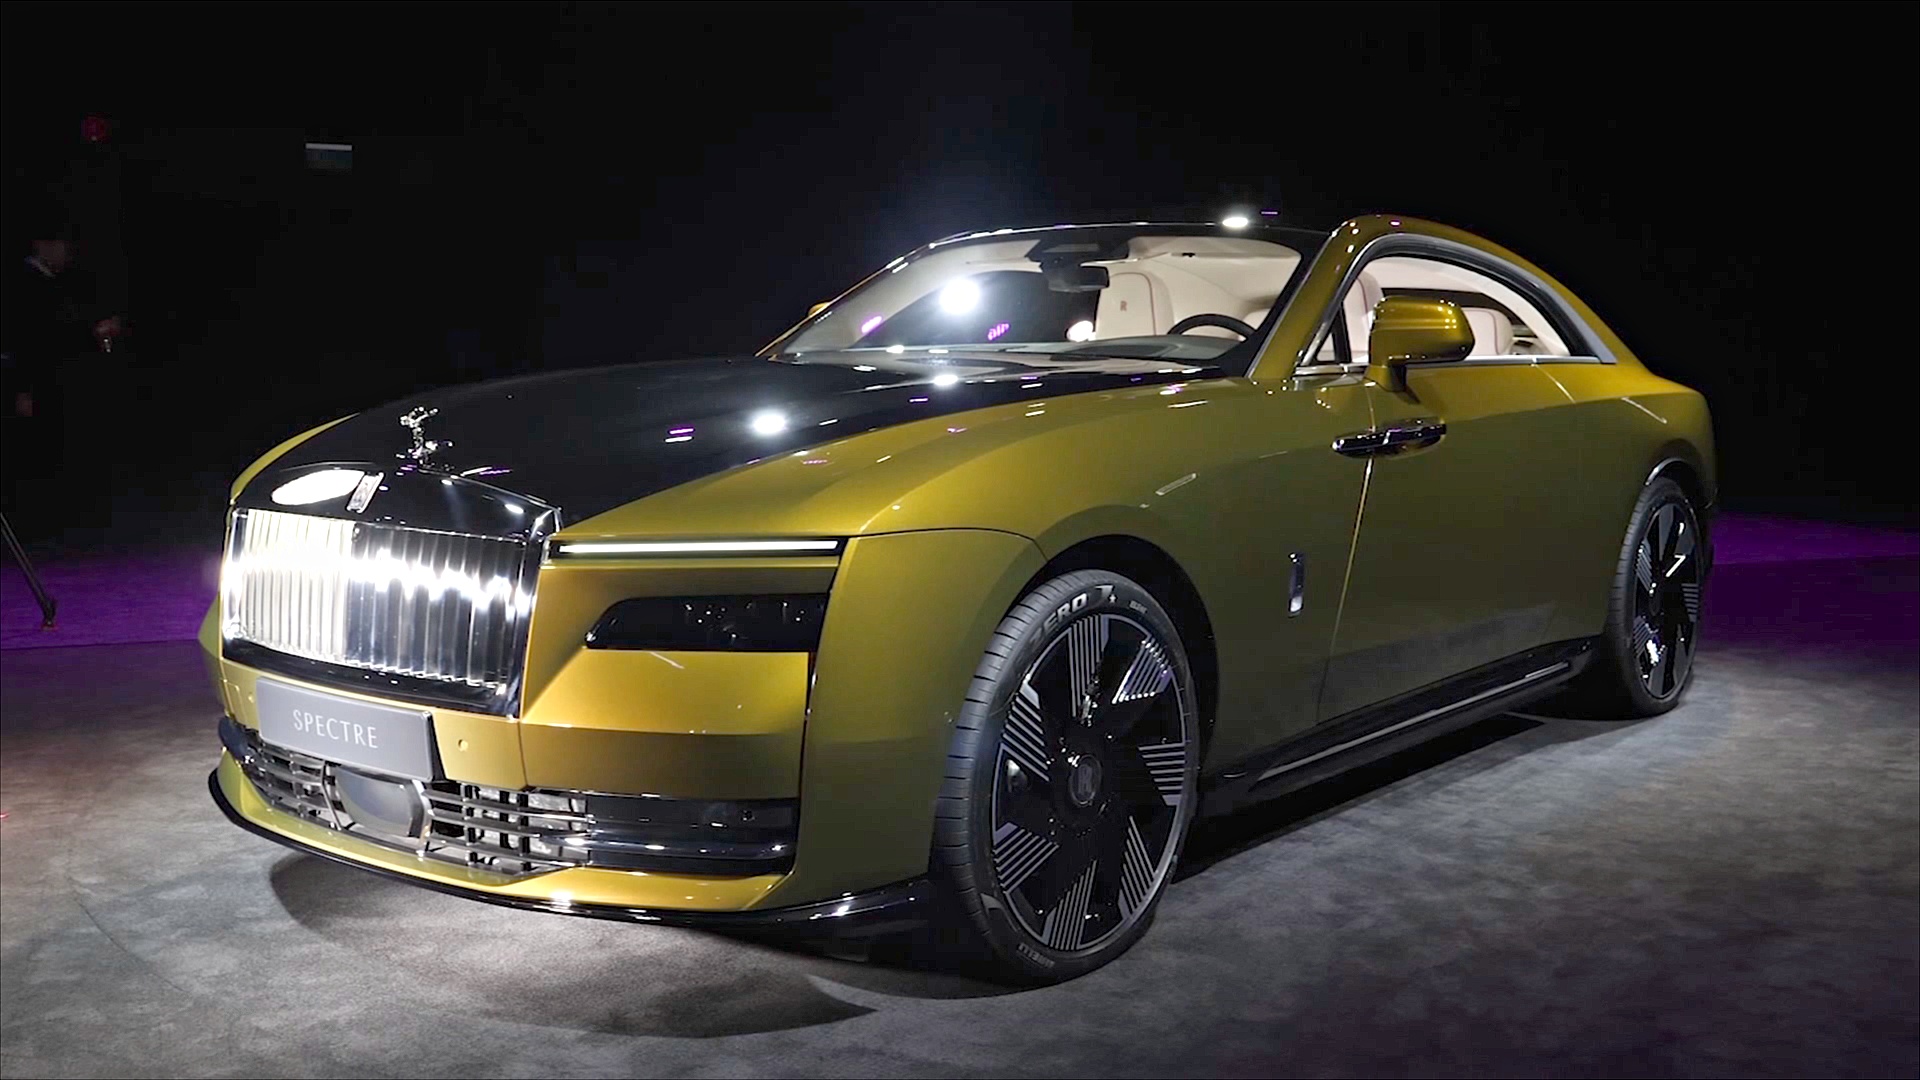 Rolls-Royce показал свой первый полностью электрический автомобиль